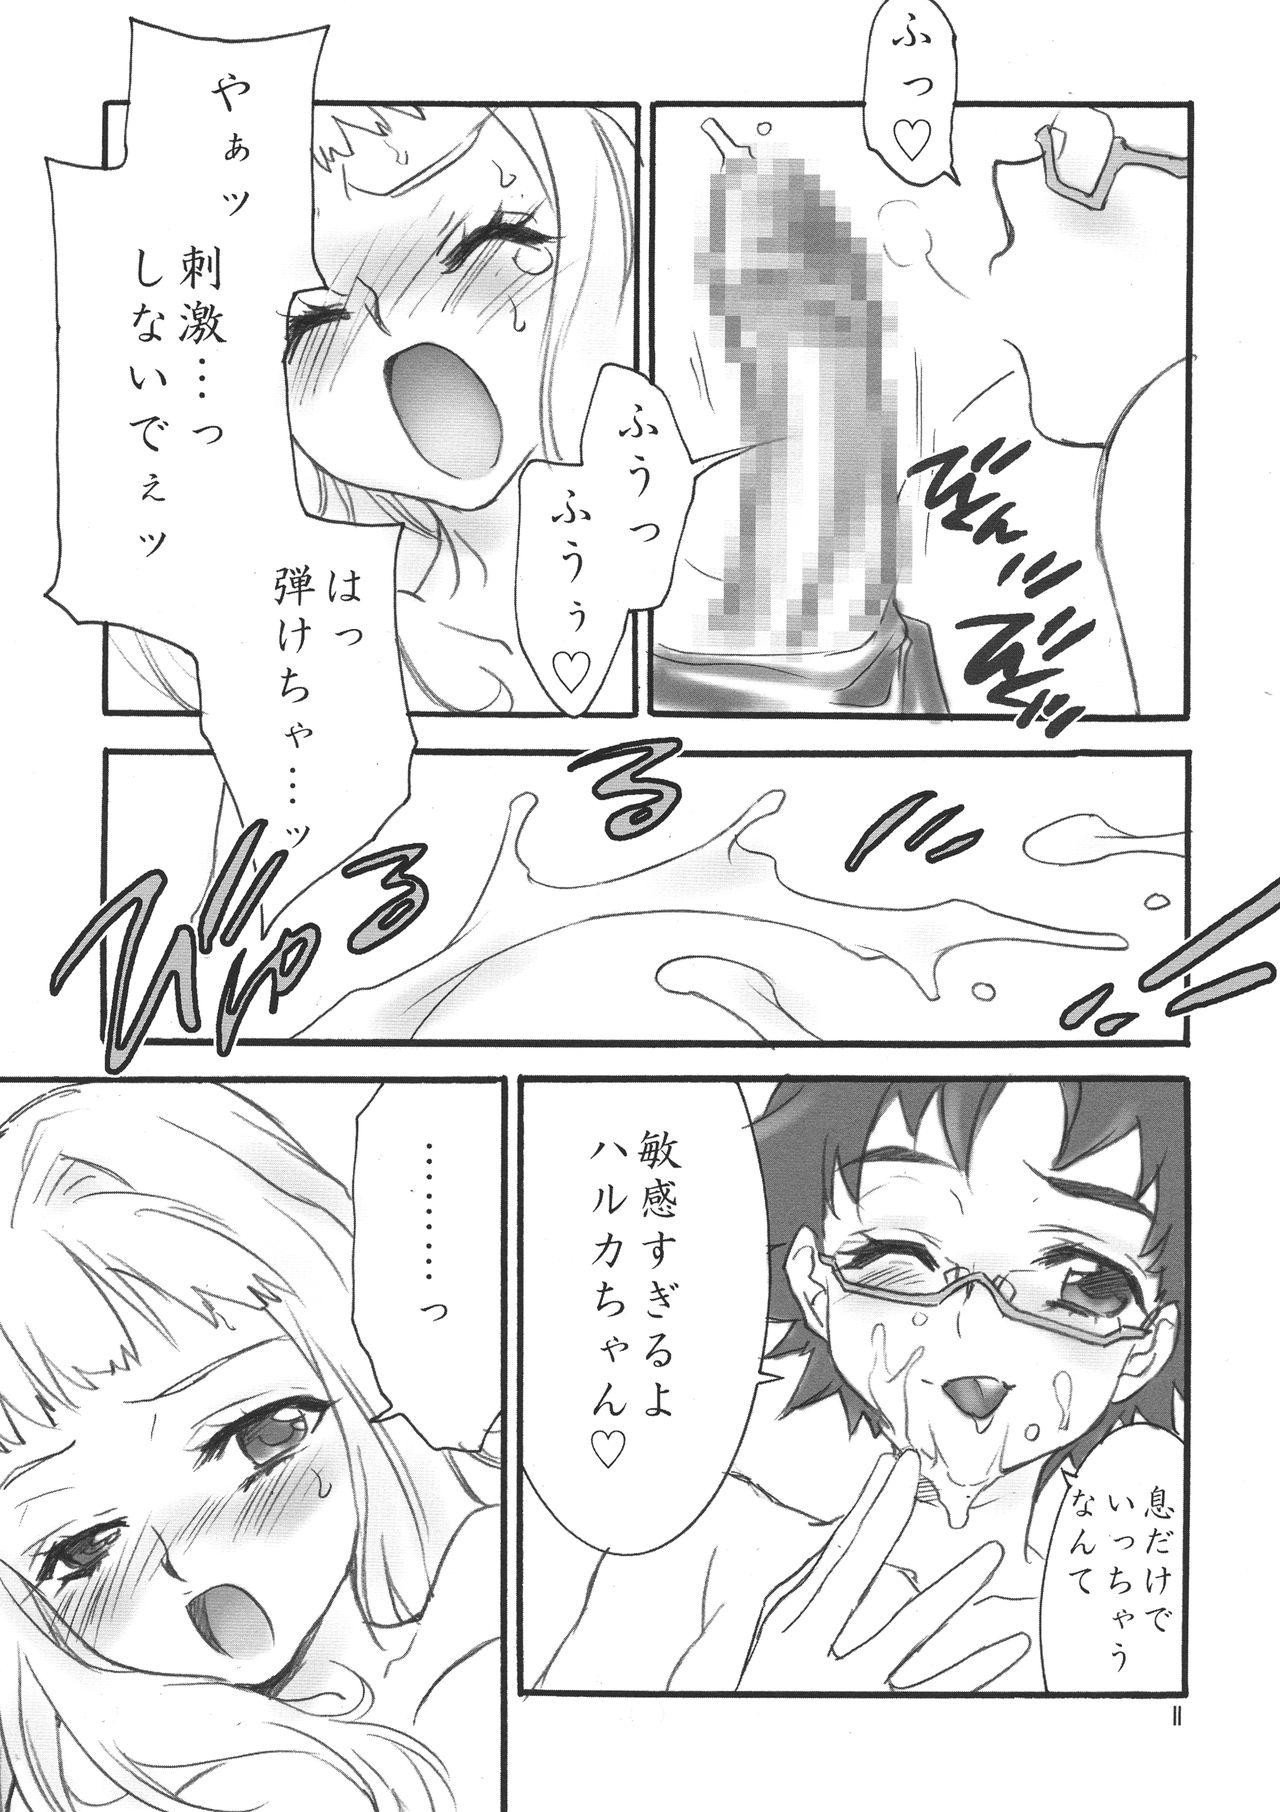 Step Fantasy En - Gundam seed destiny Ichigo 100 Mai hime Parody - Page 11